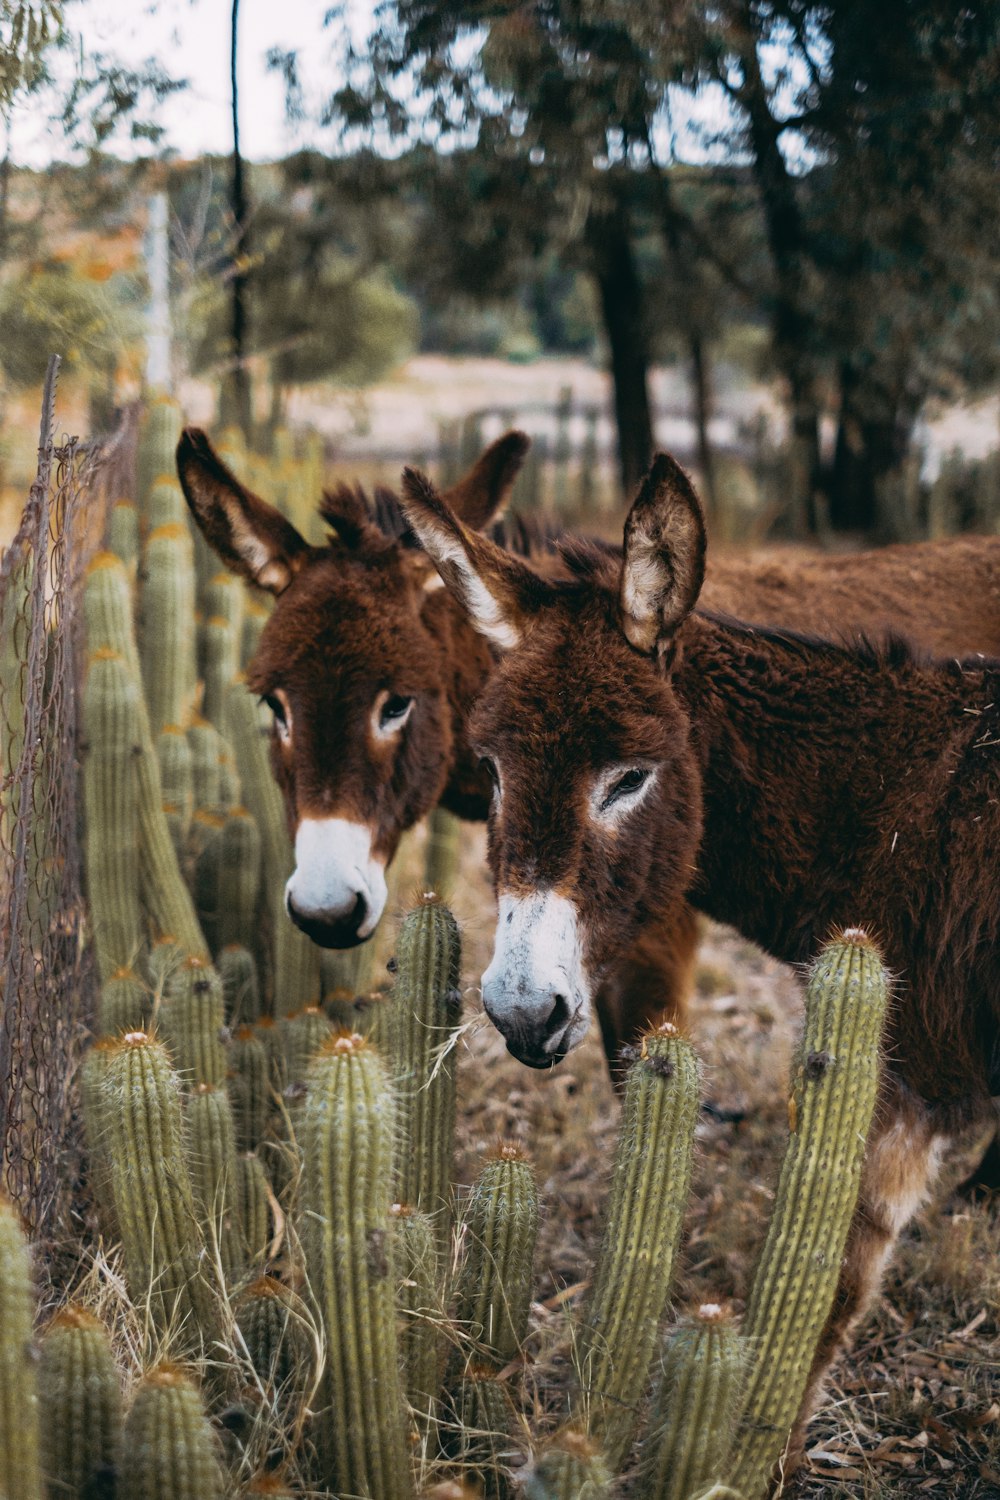 Dos burros parados uno al lado del otro cerca de un cactus